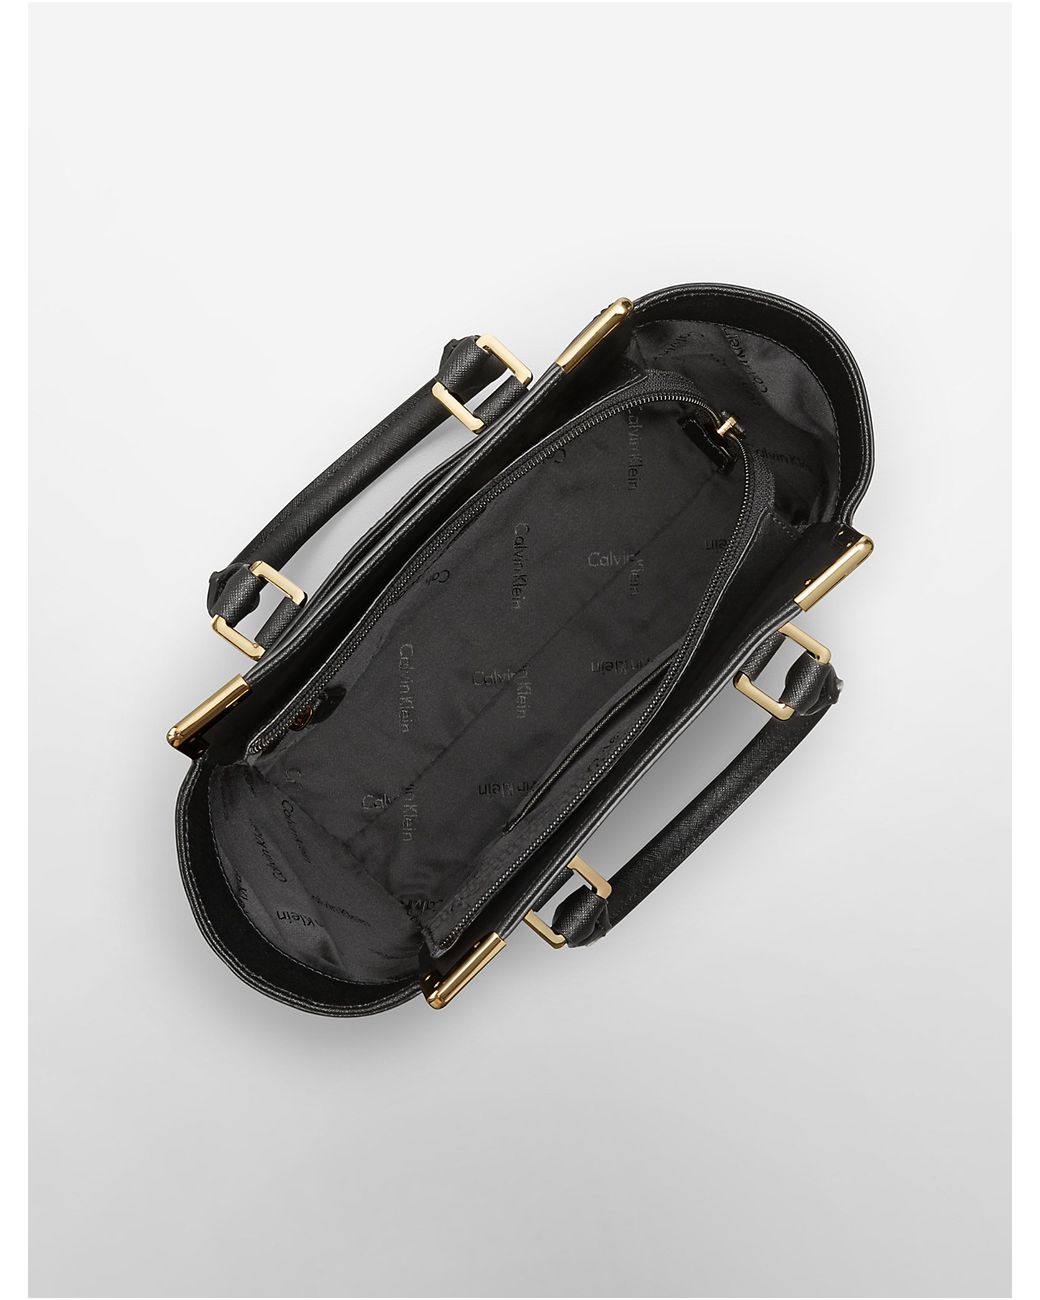 Ampère vacature Arabische Sarabo Calvin Klein Saffiano Leather Small Winged Tote Bag in Black | Lyst